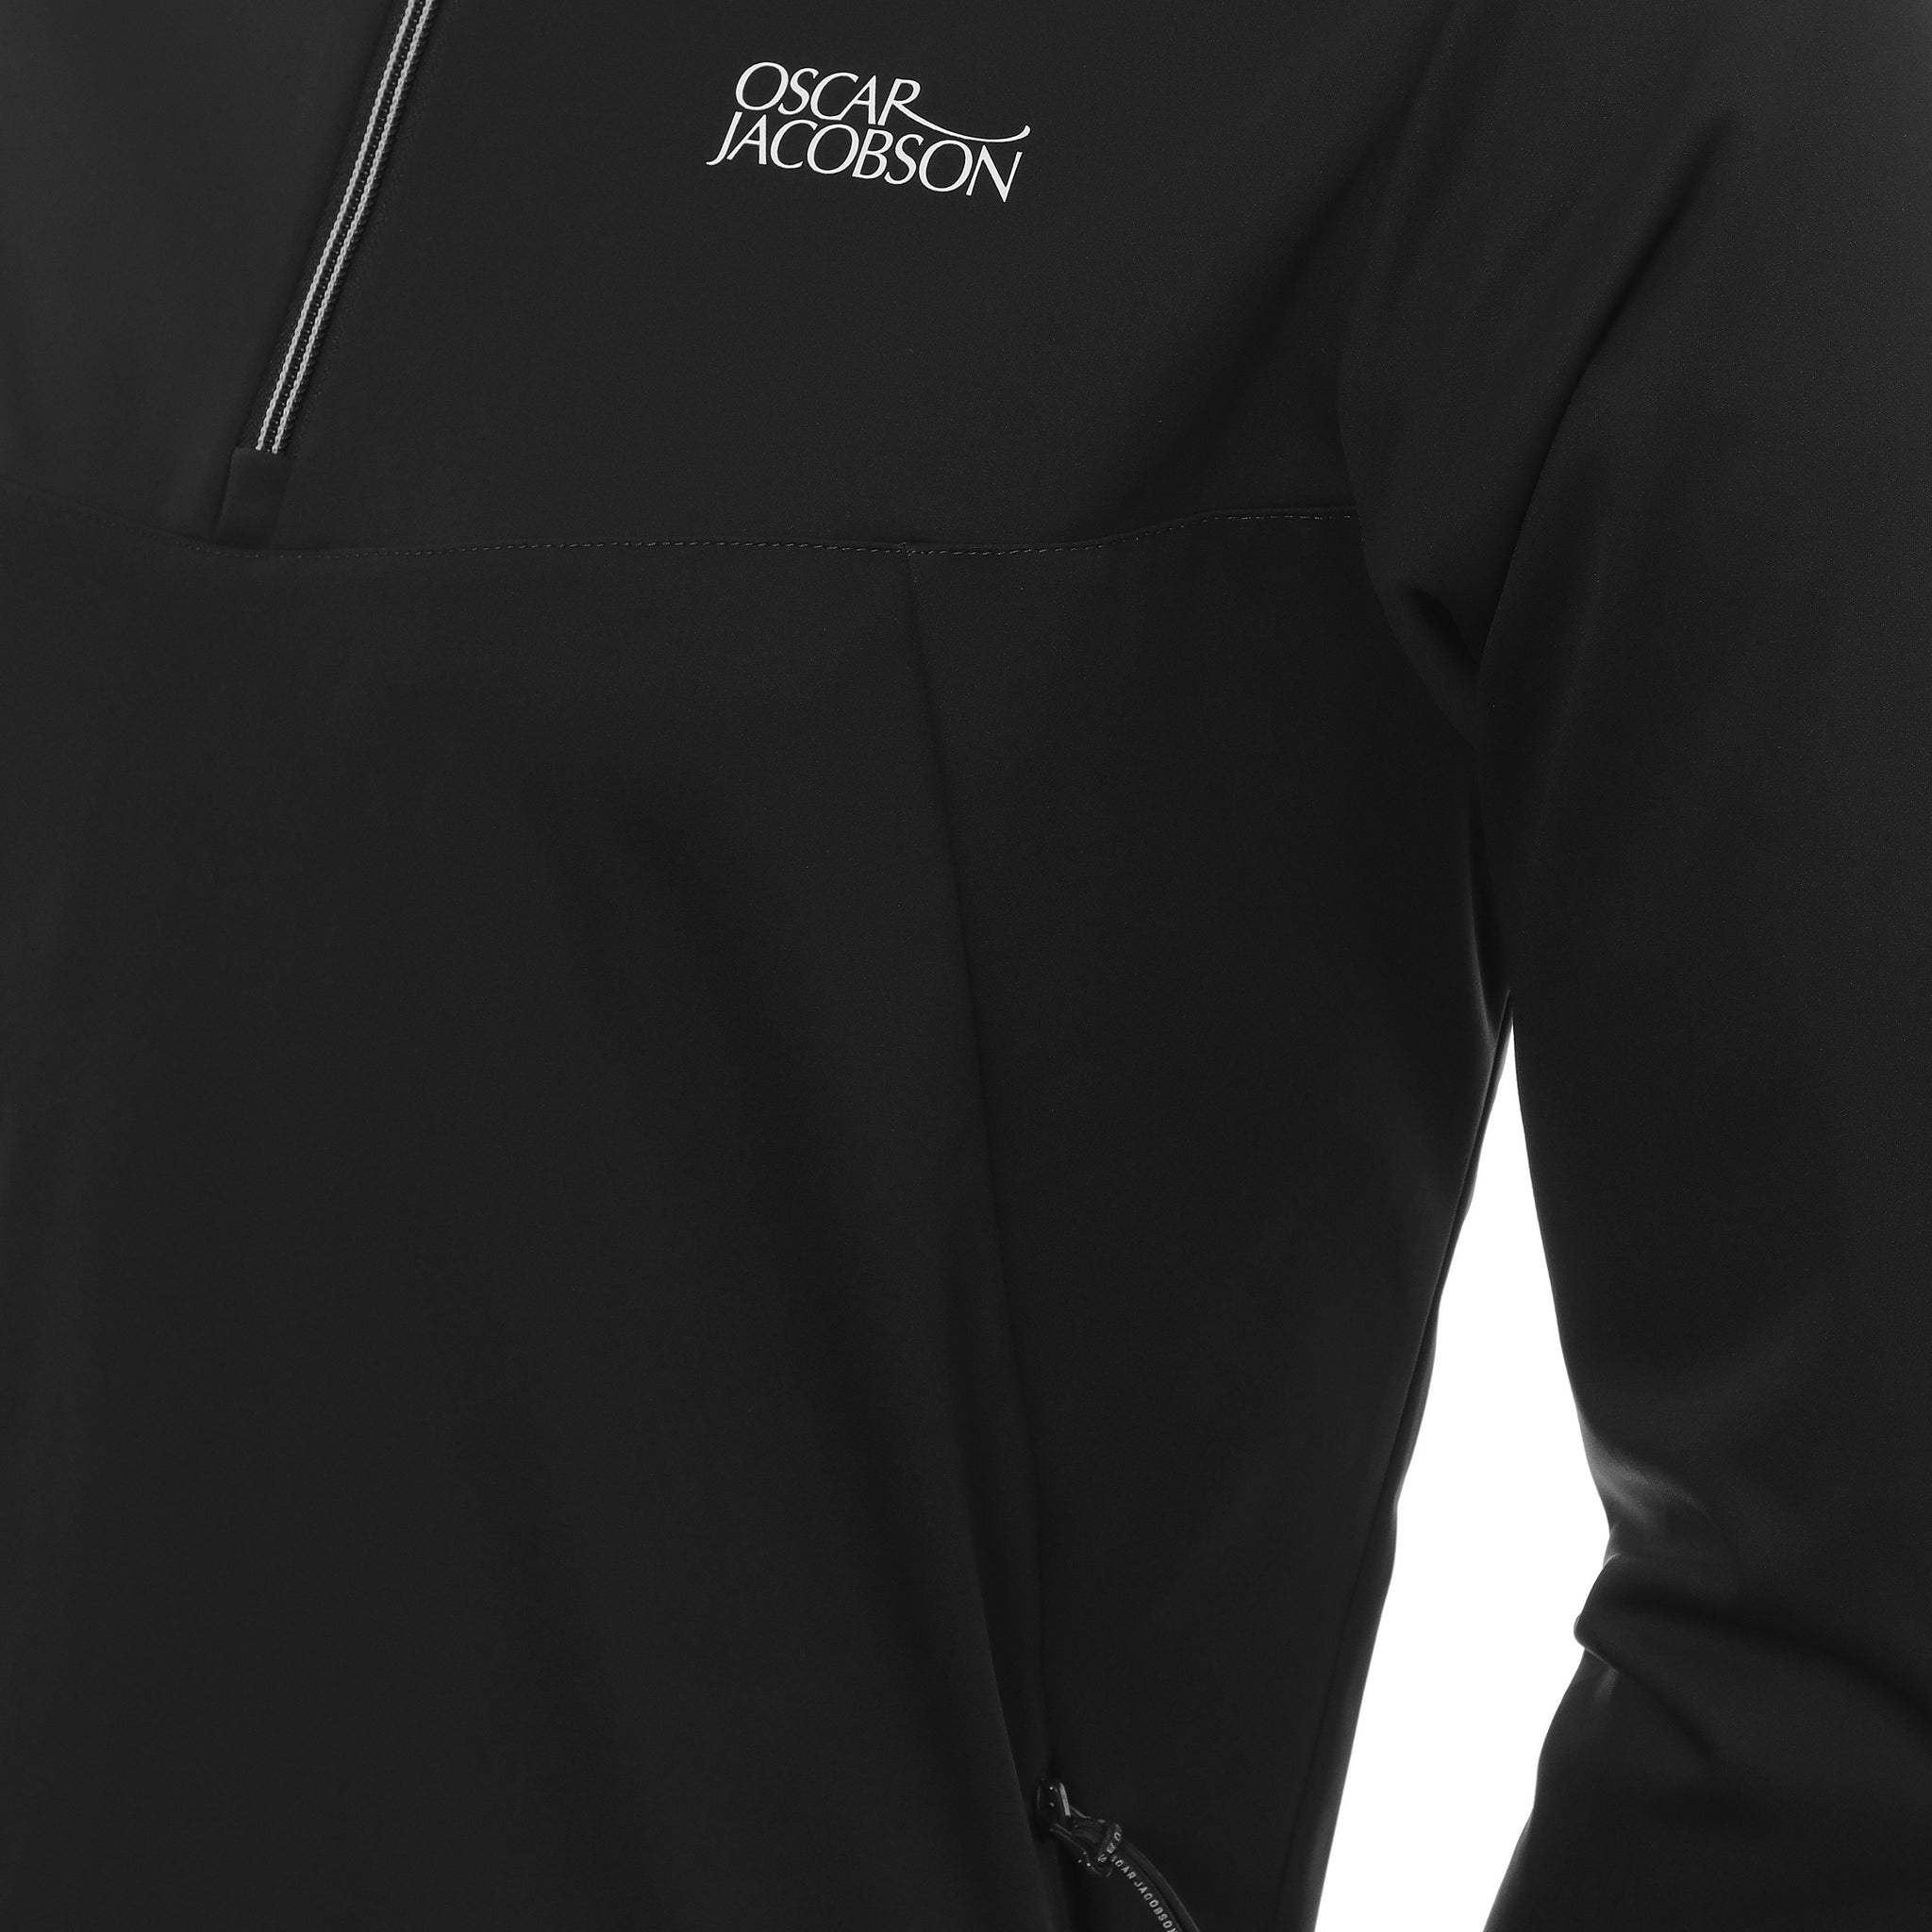 oscar-jacobson-rolfe-tour-jacket-oscar-jacobson-rolfe-tour-jacket-ojtop0090-black